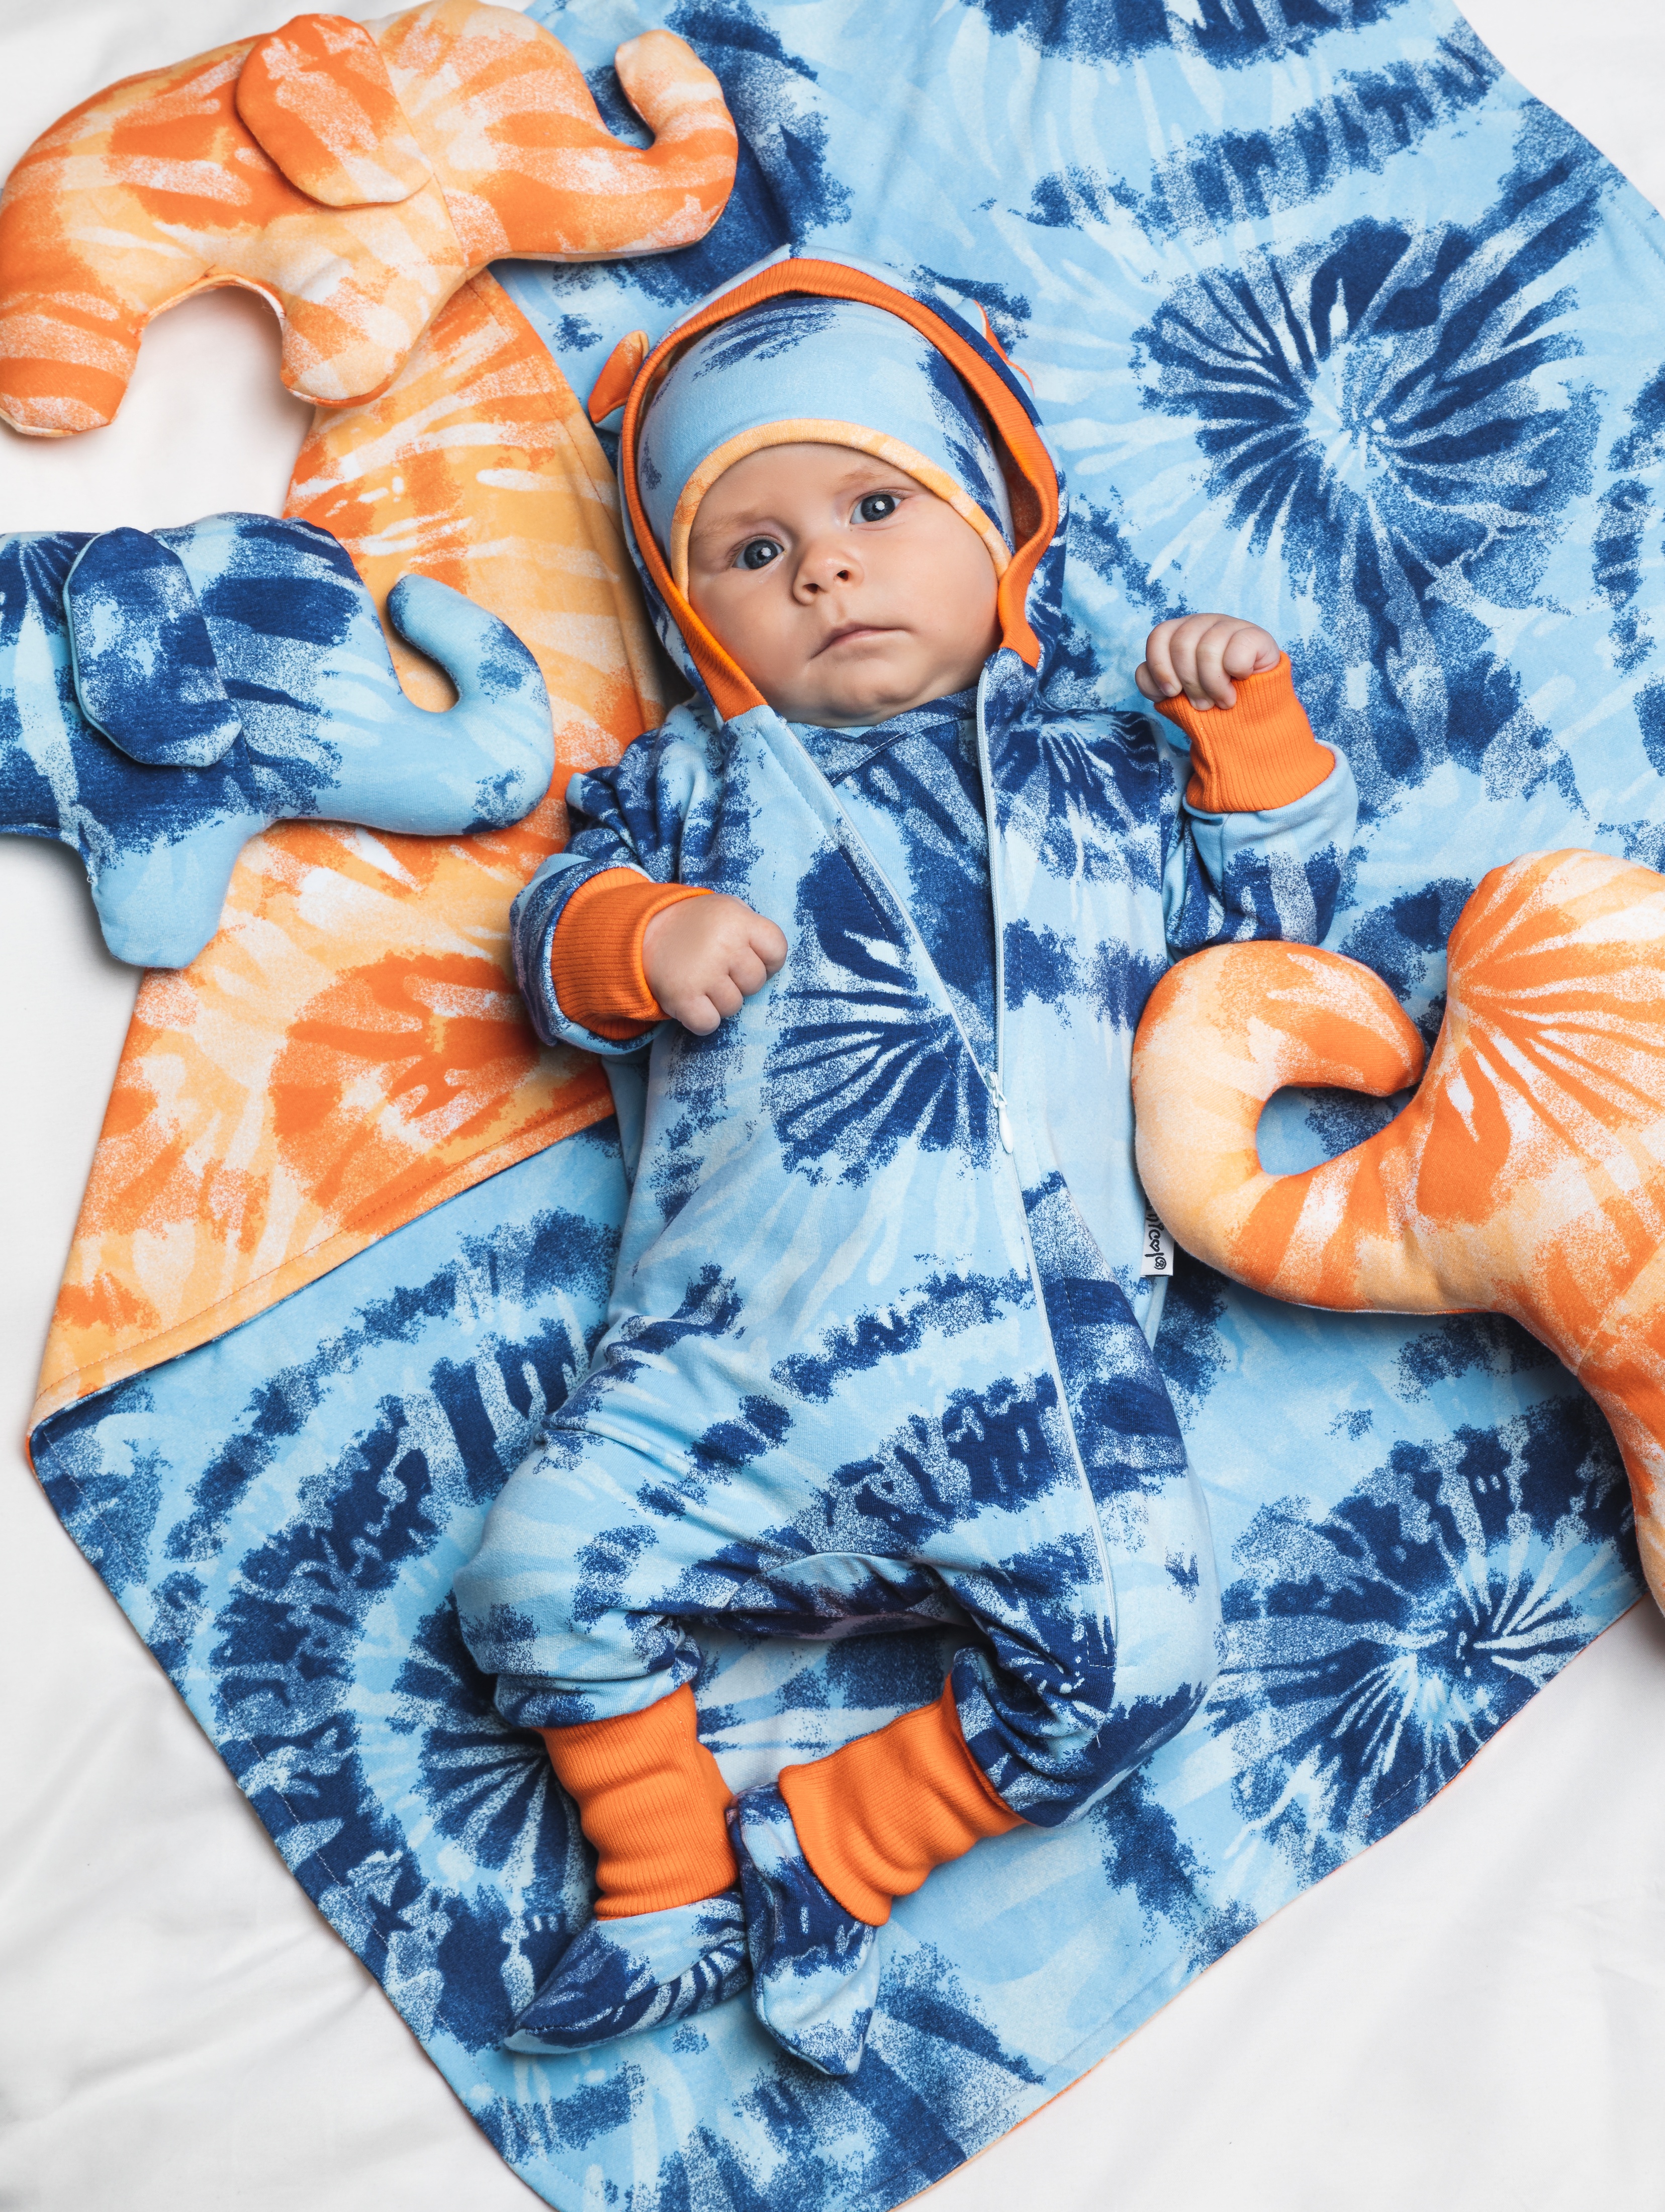 Bawełniany pajac niemowlęcy we wzory niebieski